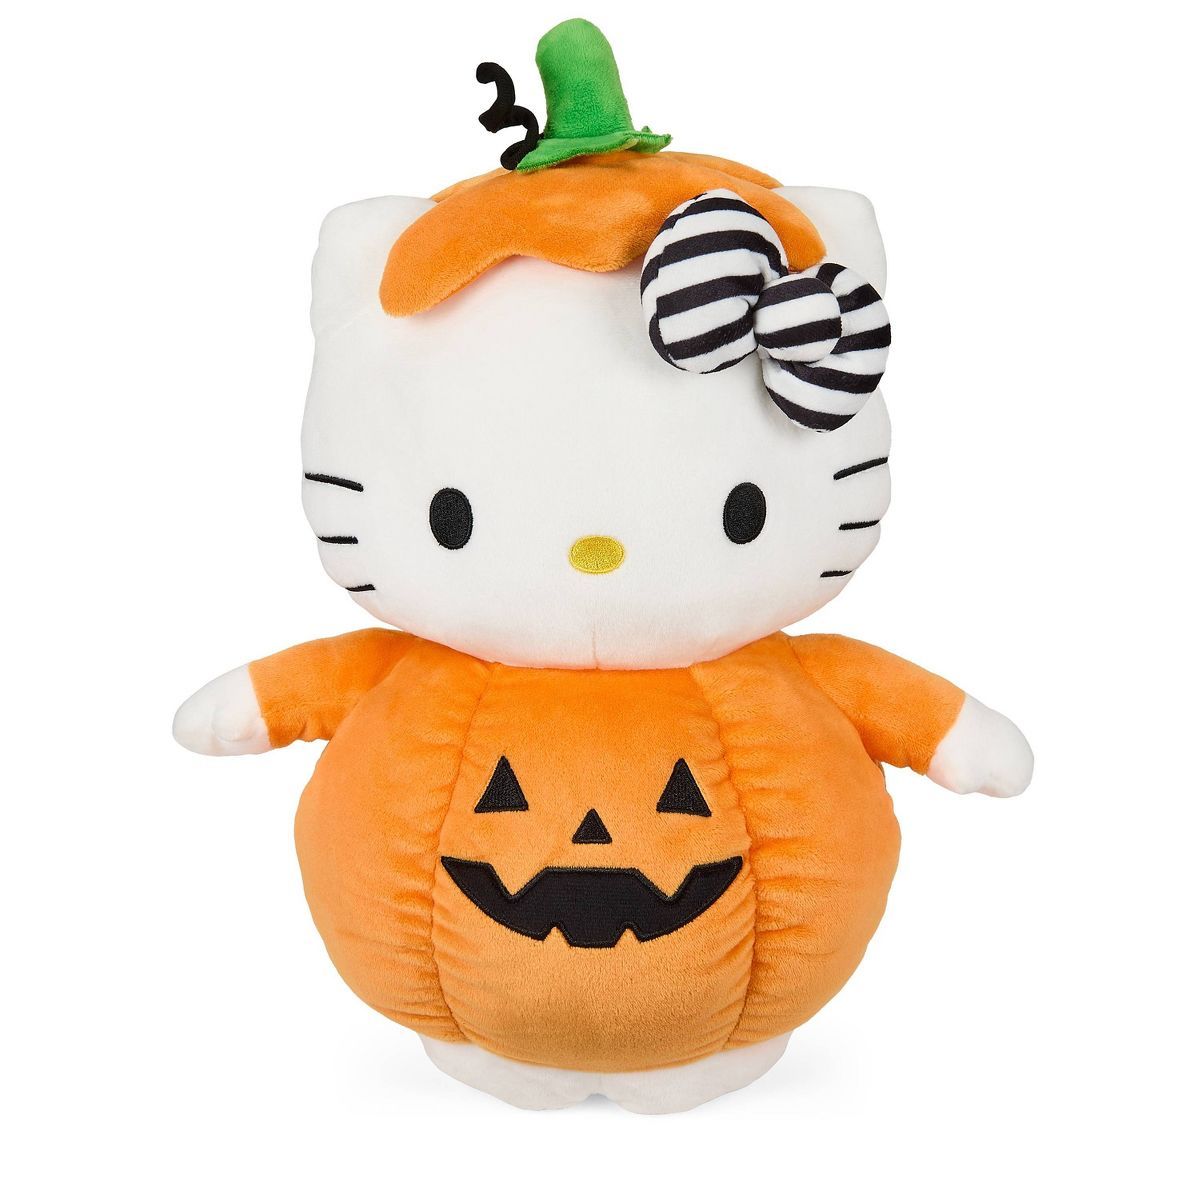 NECA Sanrio Hello Kitty Halloween Pumpkin 13" Medium Plush Action Figure | Target